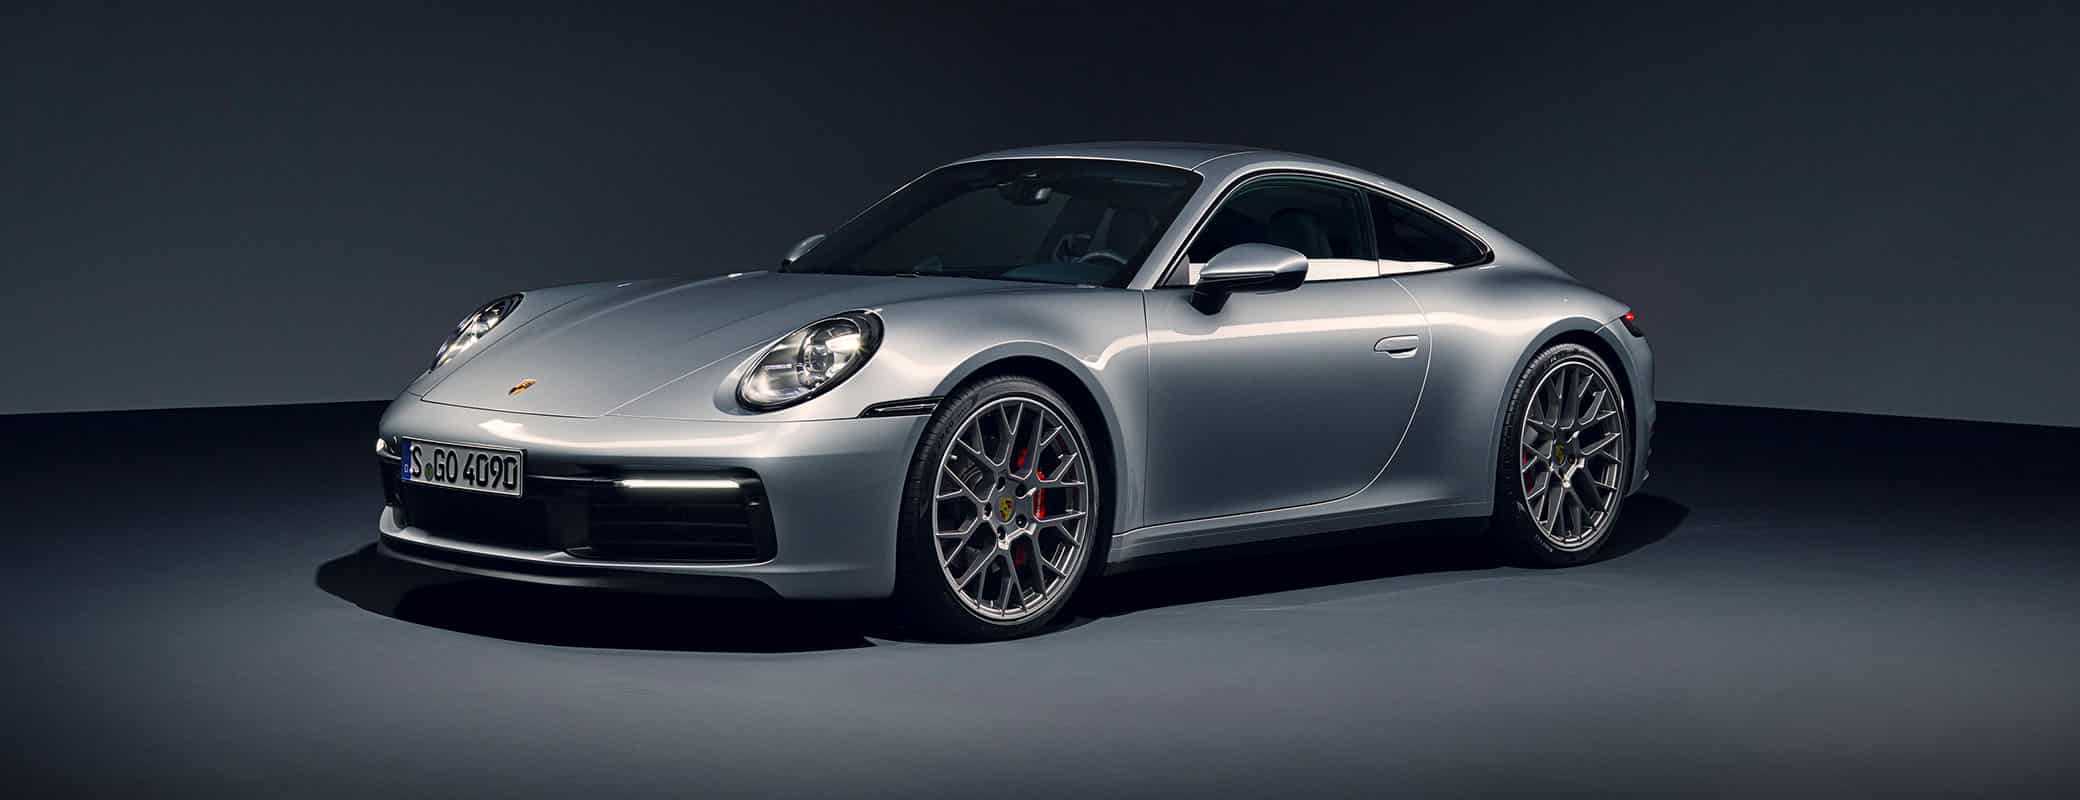 Brand Finance Luxury & Premium 50 2023 led by Porsche again